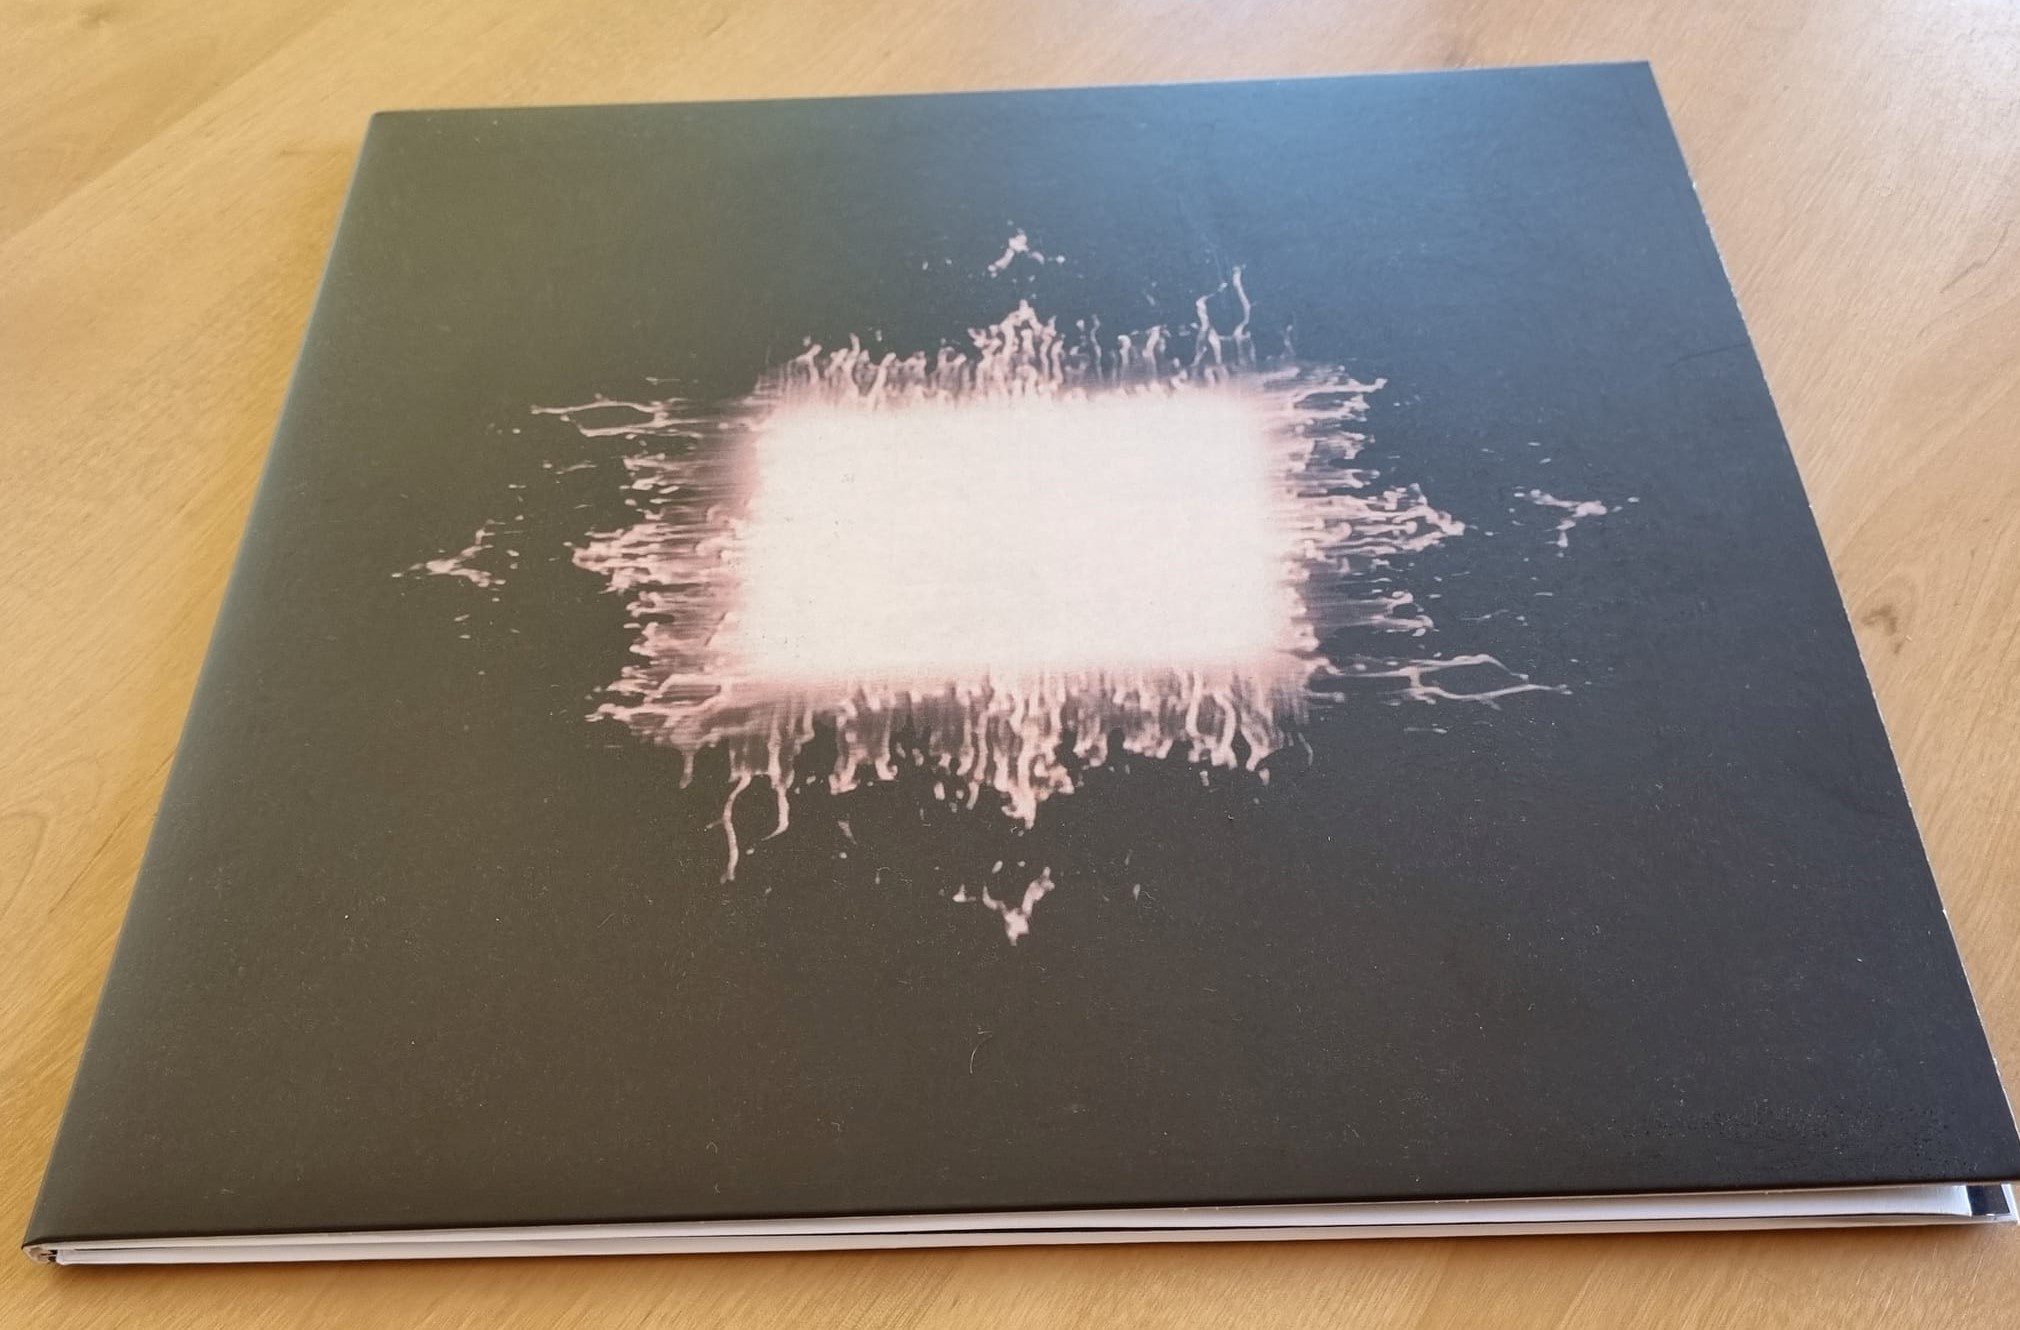 Tool - Aenima - LP Record Vinyl Album